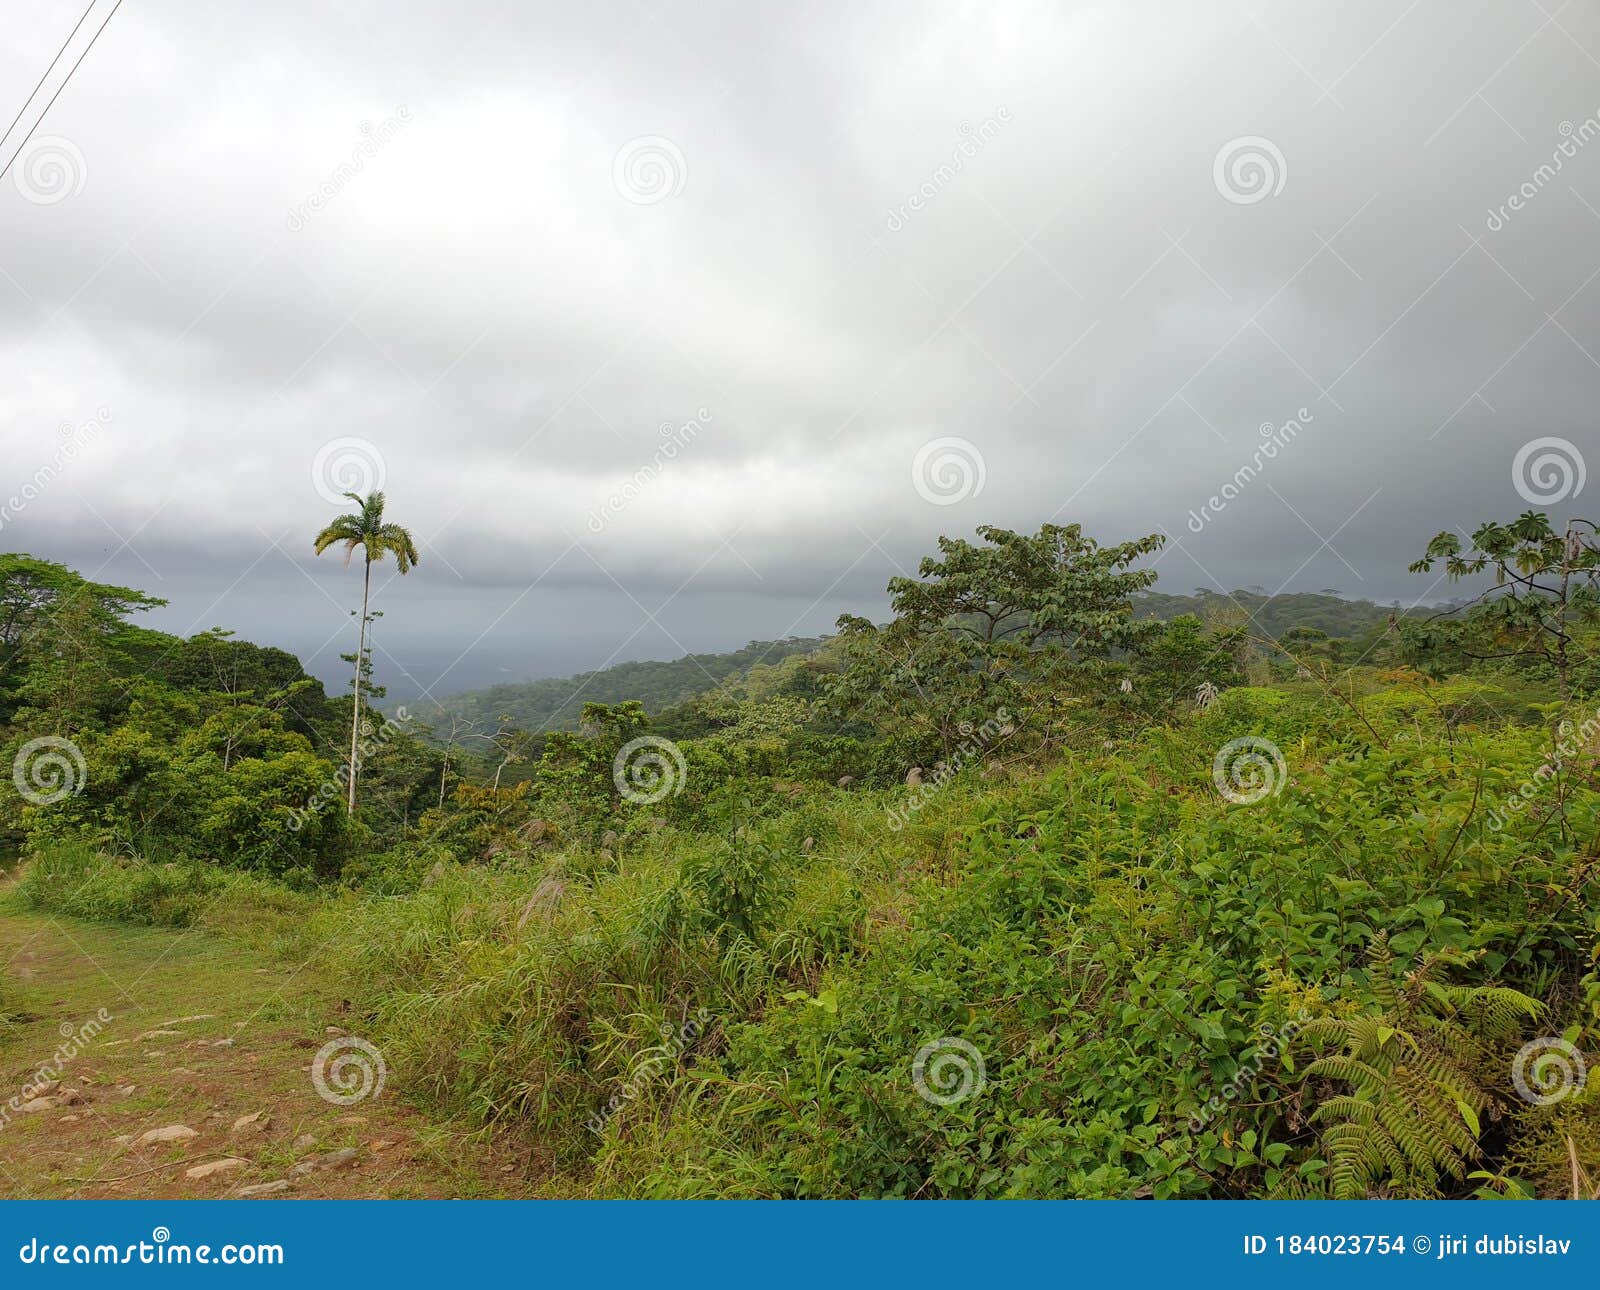 jungle valley in costarica